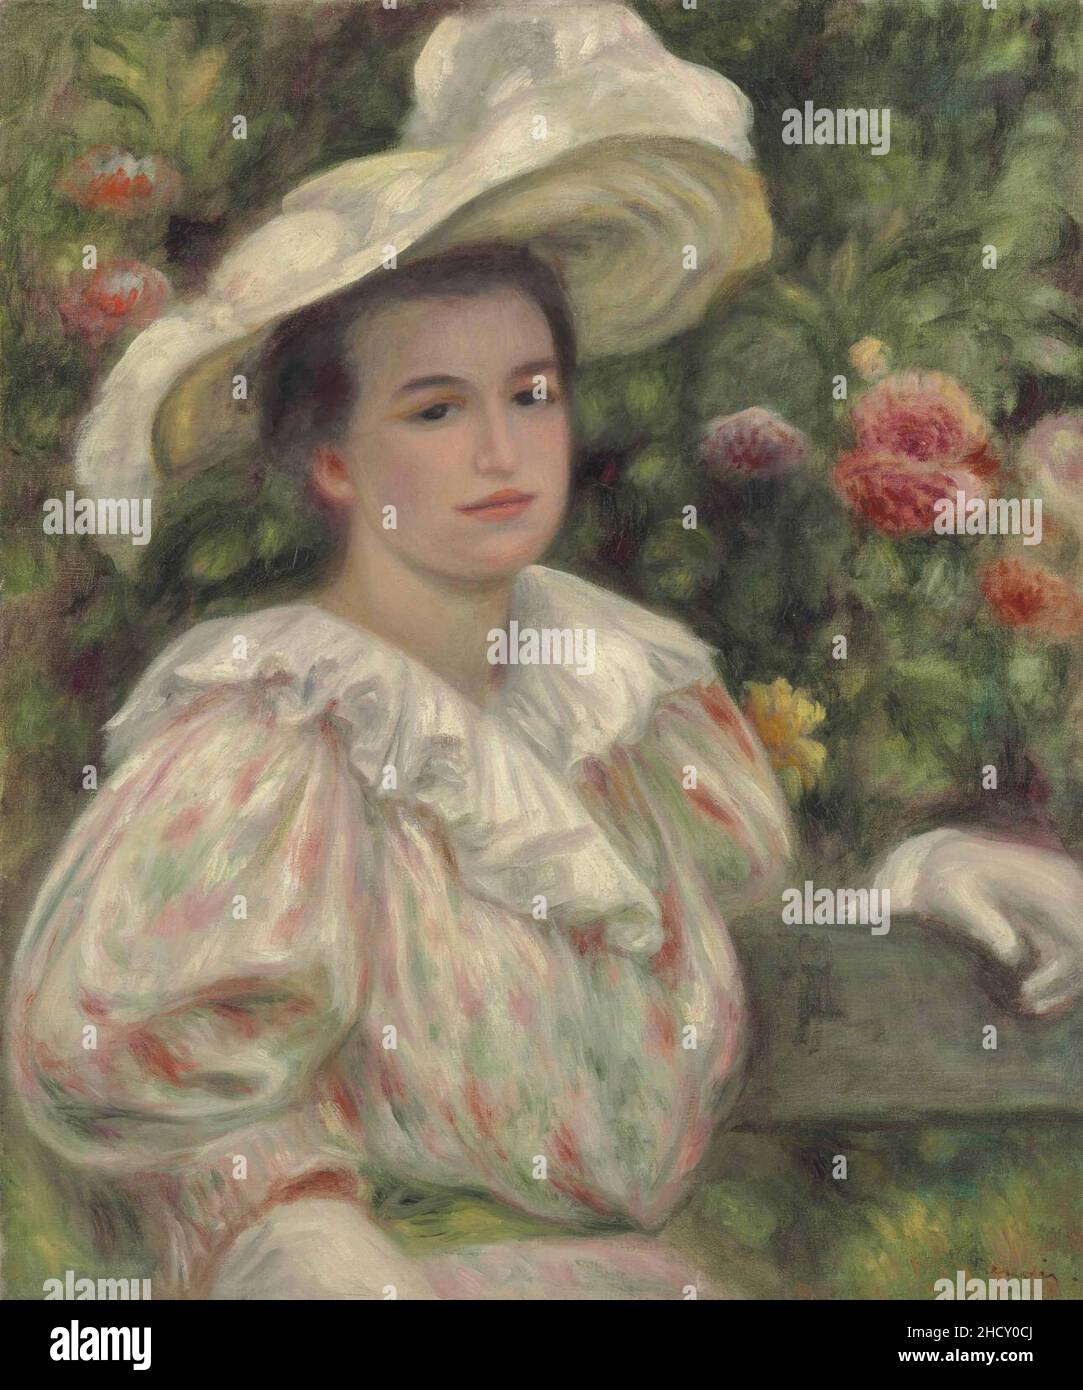 Renoir - Jeune fille dans les fleurs or Femme au chapeau blanc, circa 1895. Stock Photo